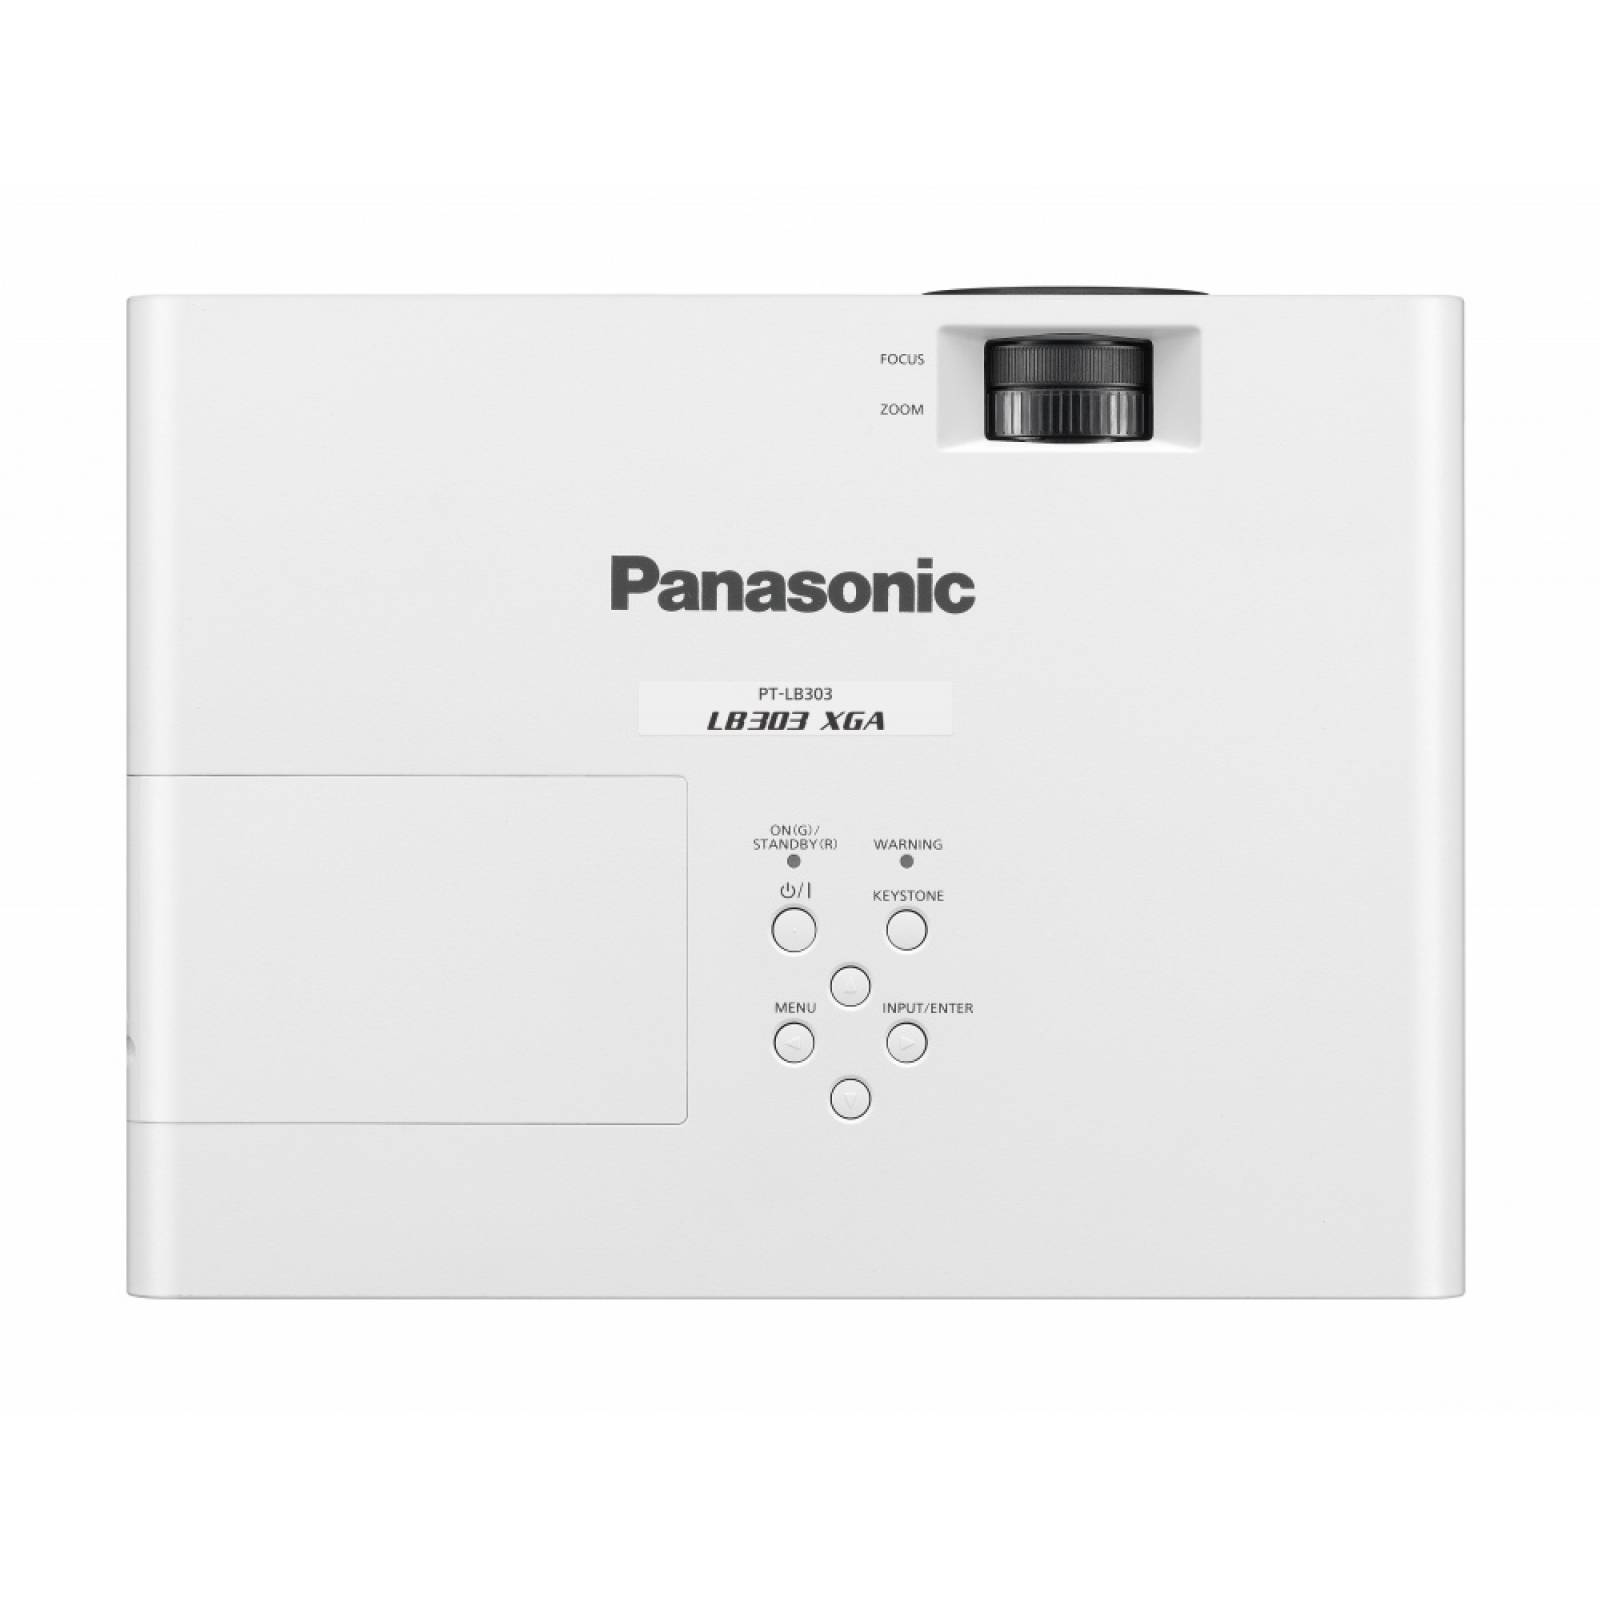 Videoproyector Panasonic Pt-lb303u 3100 Lumenes Xga, Vga, Hd